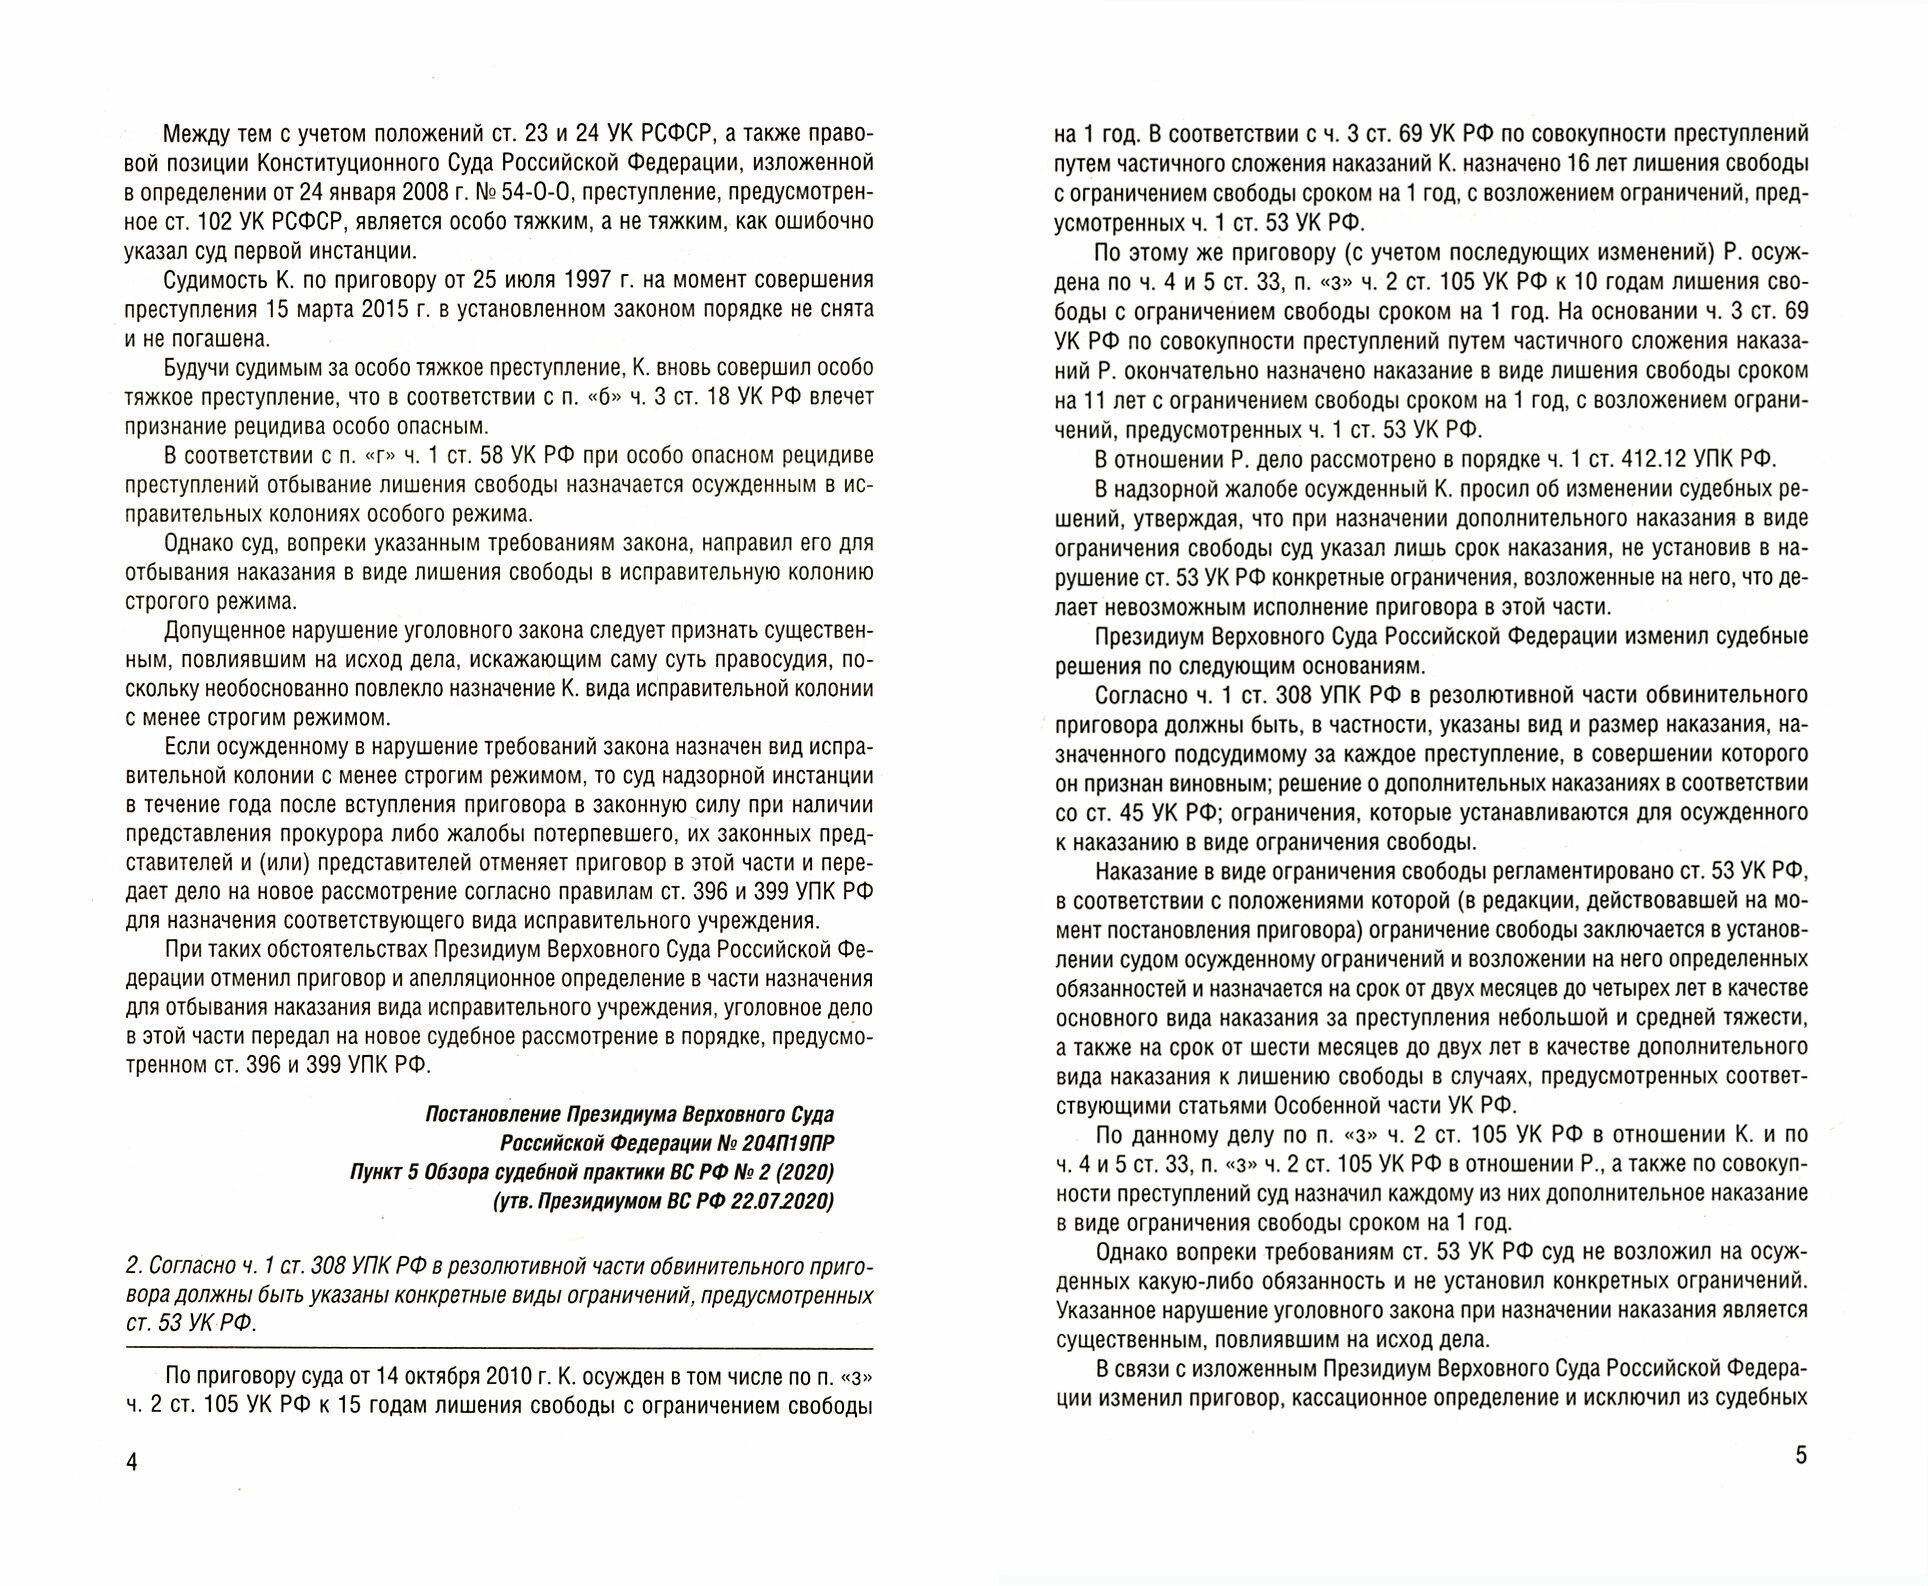 Разъяснения Верховного Суда РФ по уголовным и административным делам - фото №2